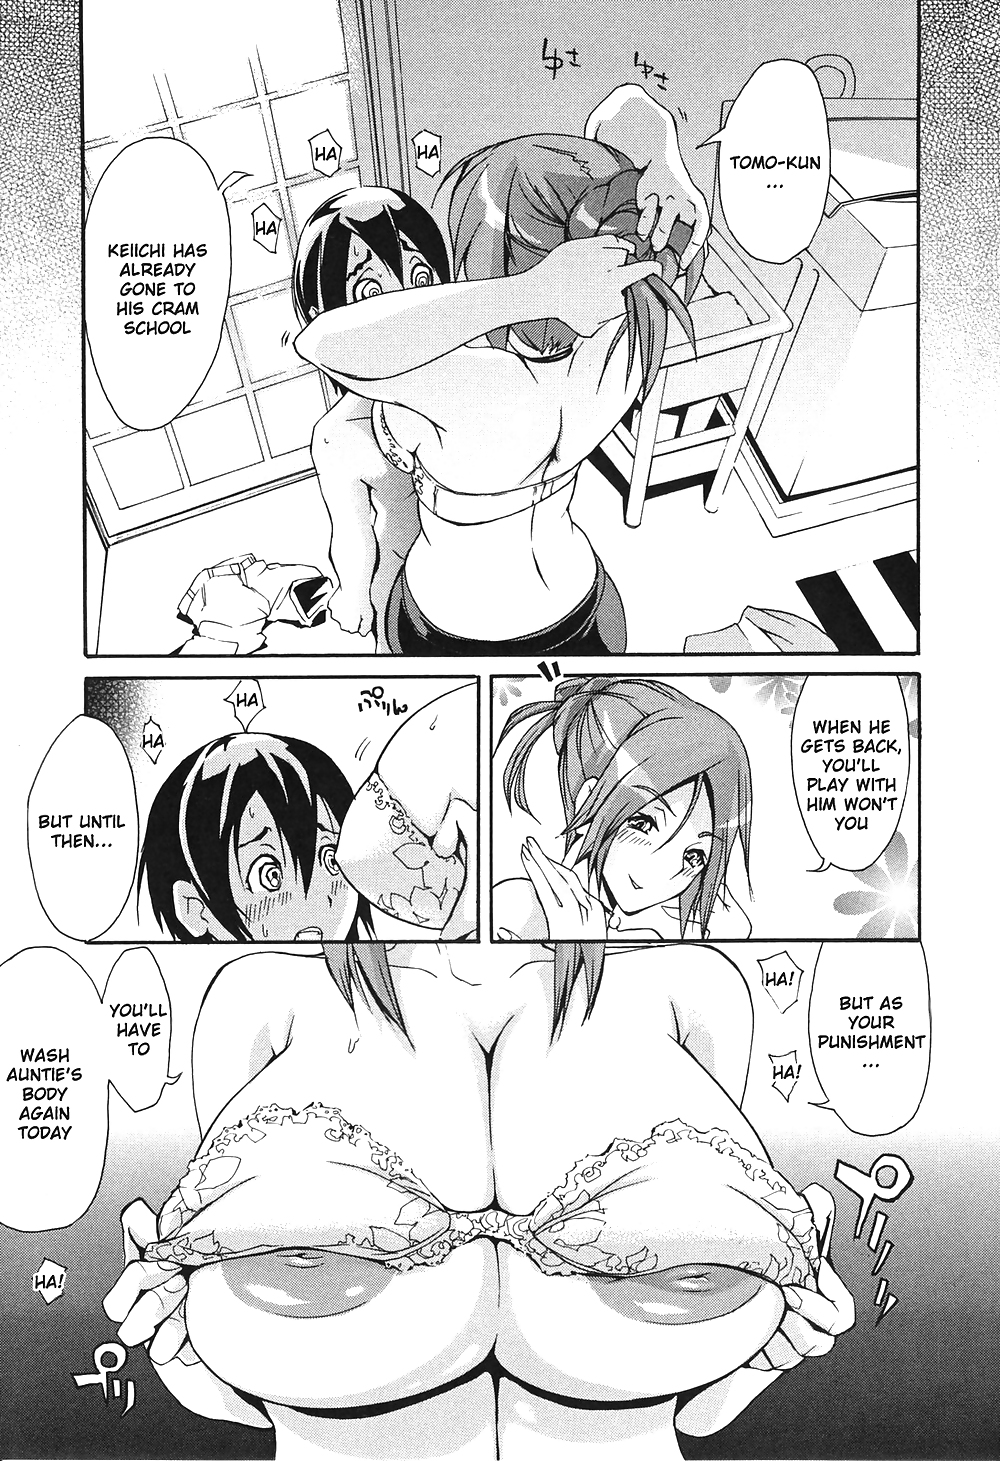 (fumetto hentai) unioshi opere erotiche
 #21733770